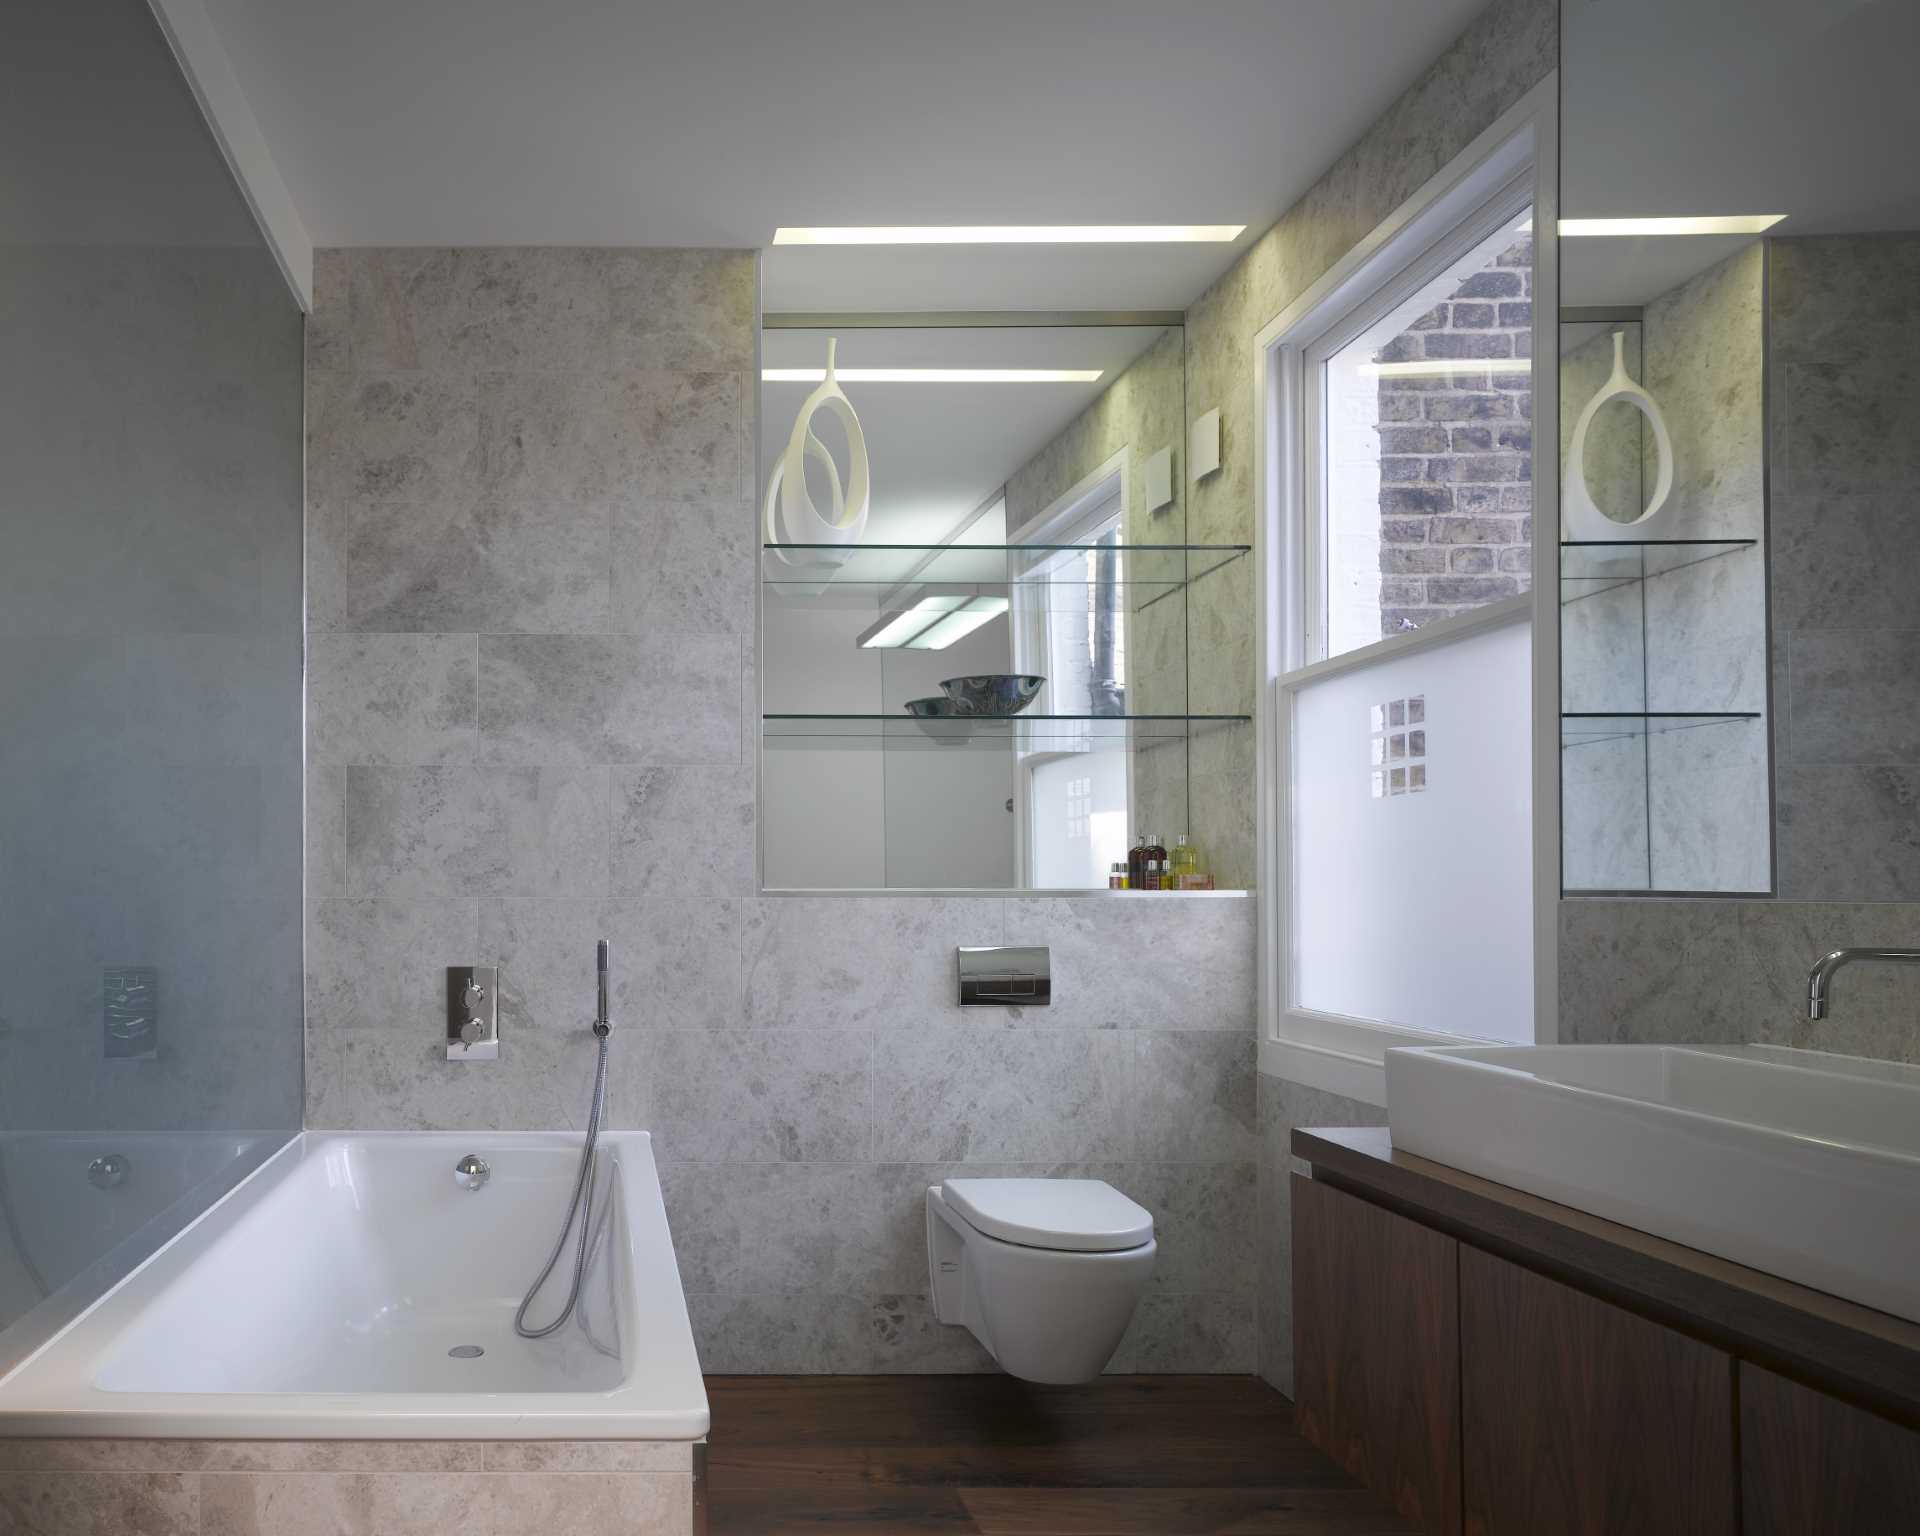 În această baie, pereții și podelele sunt acoperite cu gresie, în timp ce oglinzile reflectă lumina din jurul interiorului.